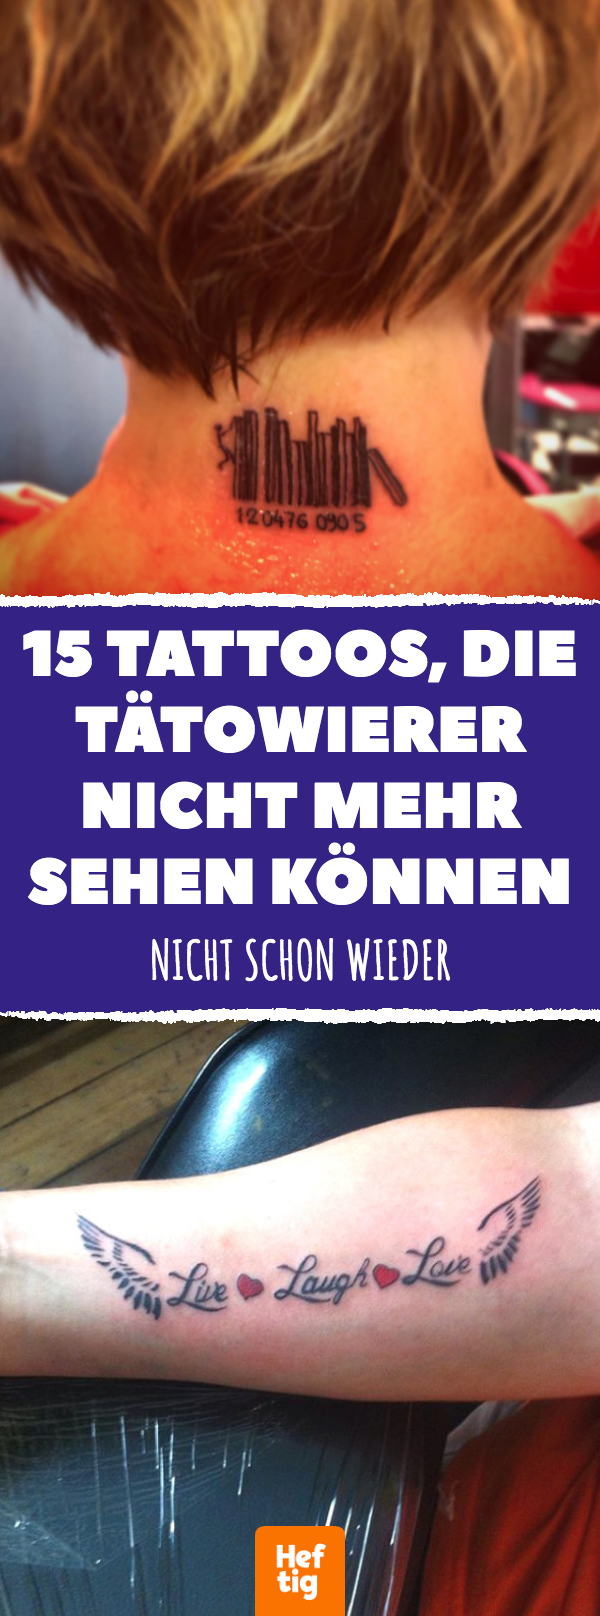 15 Tattoos, die Tätowierer nicht mehr sehen können